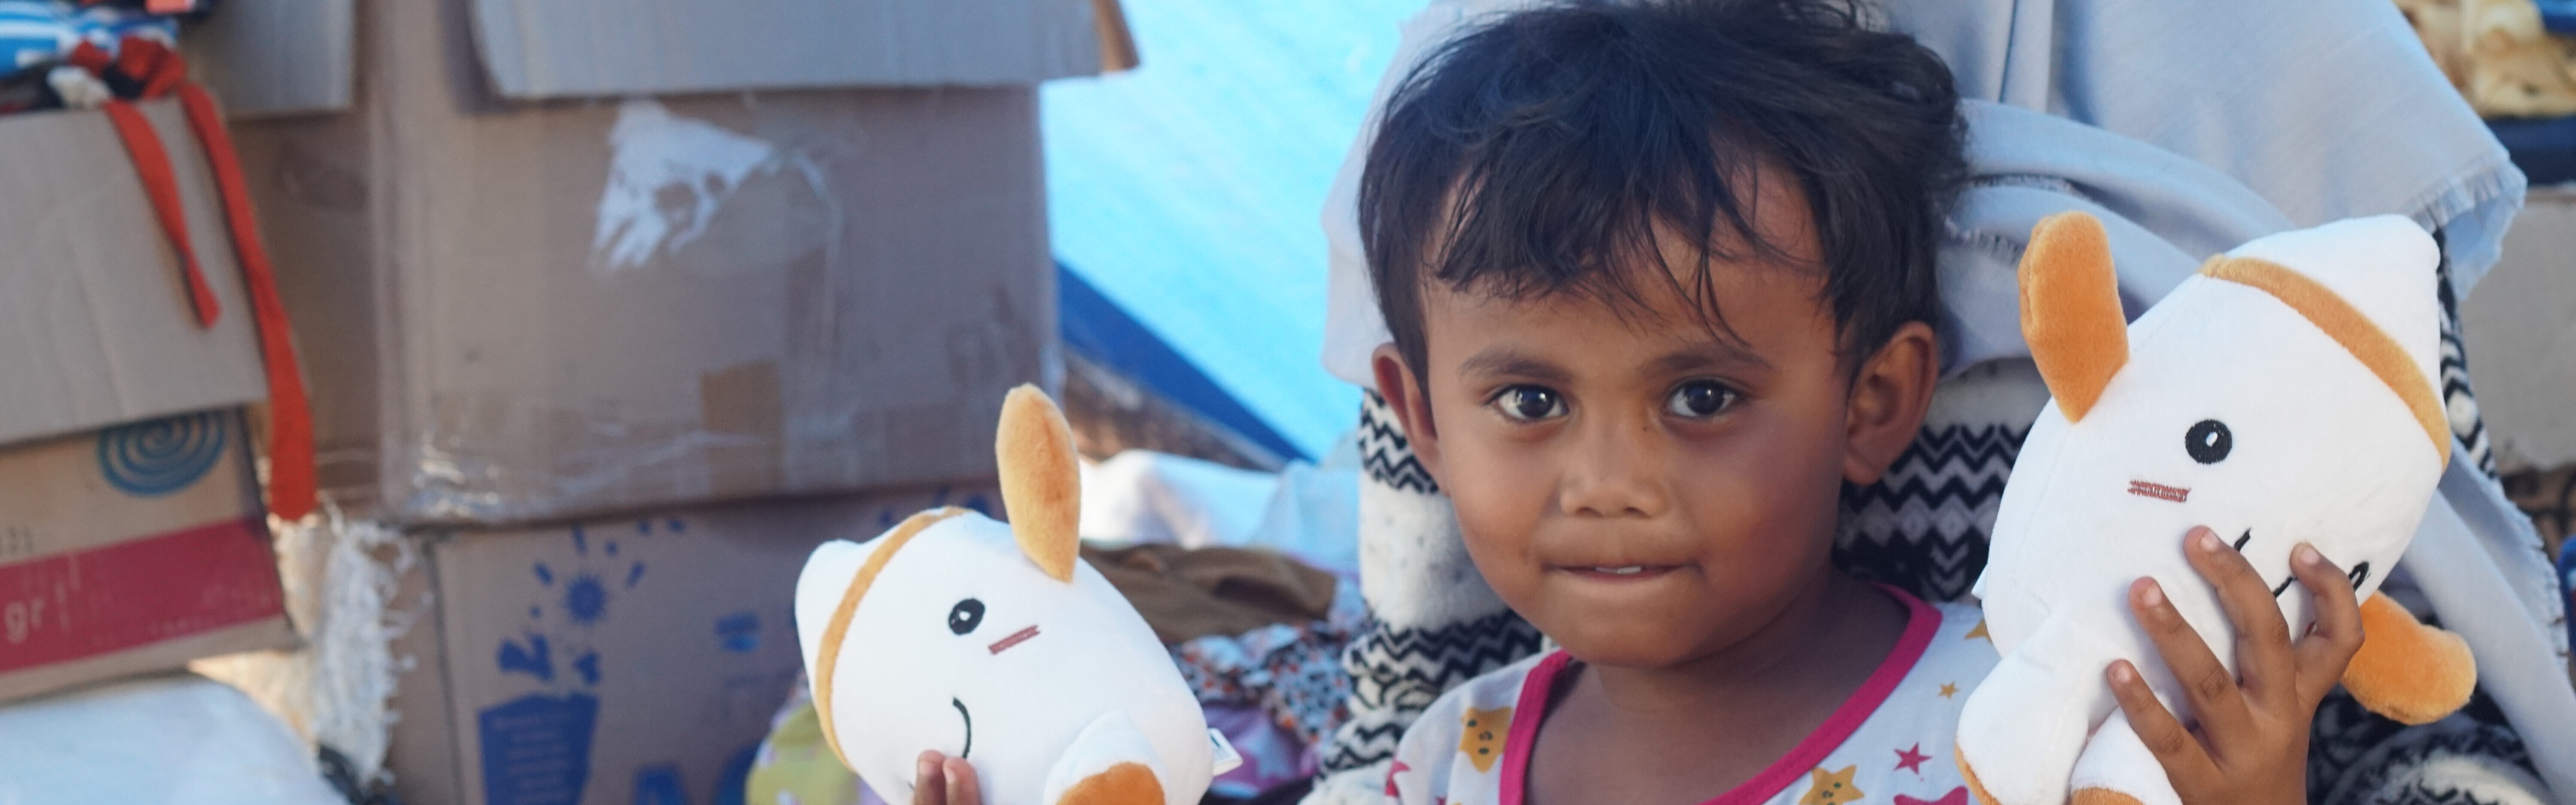 Nach den Naturkatastrophen auf Sulawesi fanden diese Mädchen Zuflucht in einer Notunterkunft